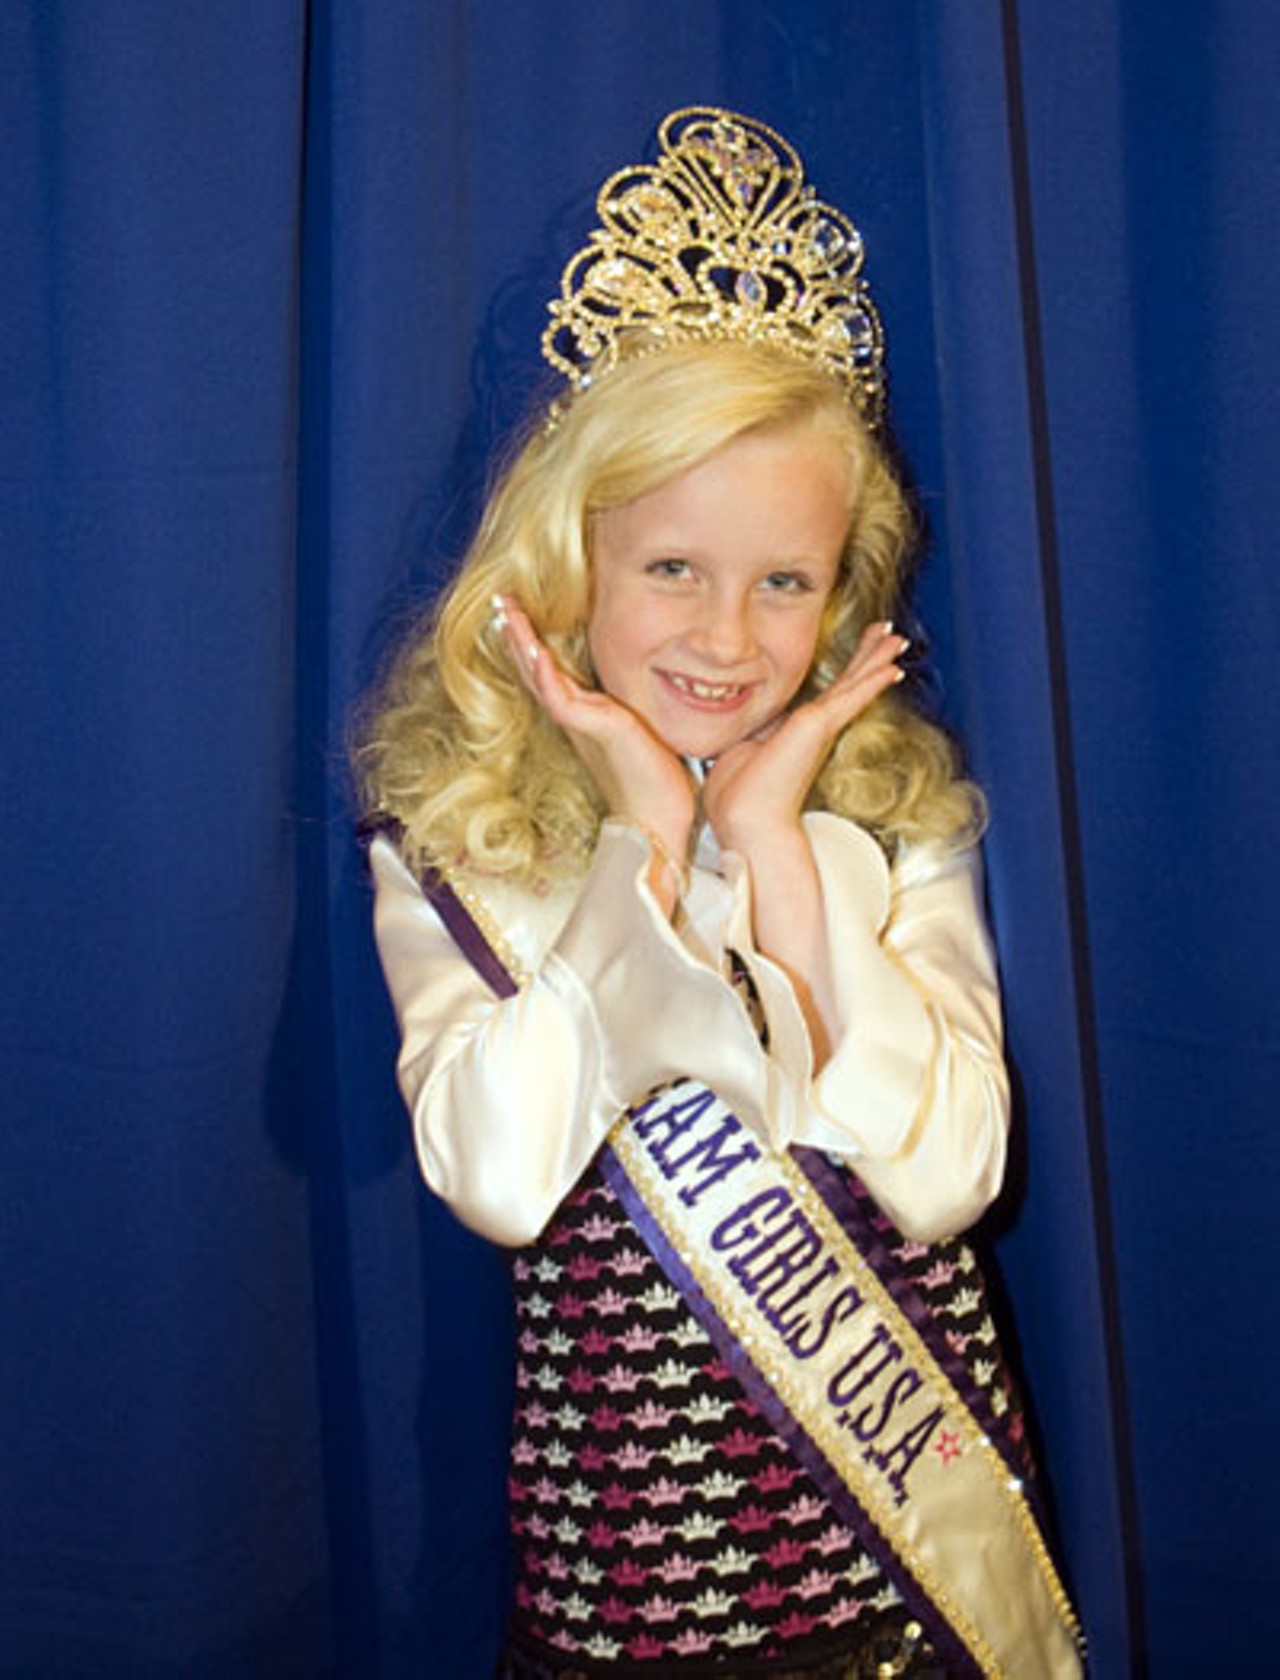 Elizabeth Anastasia Bennett from Lees Summit, Missouri was 2007 National Junior High Point Champion.